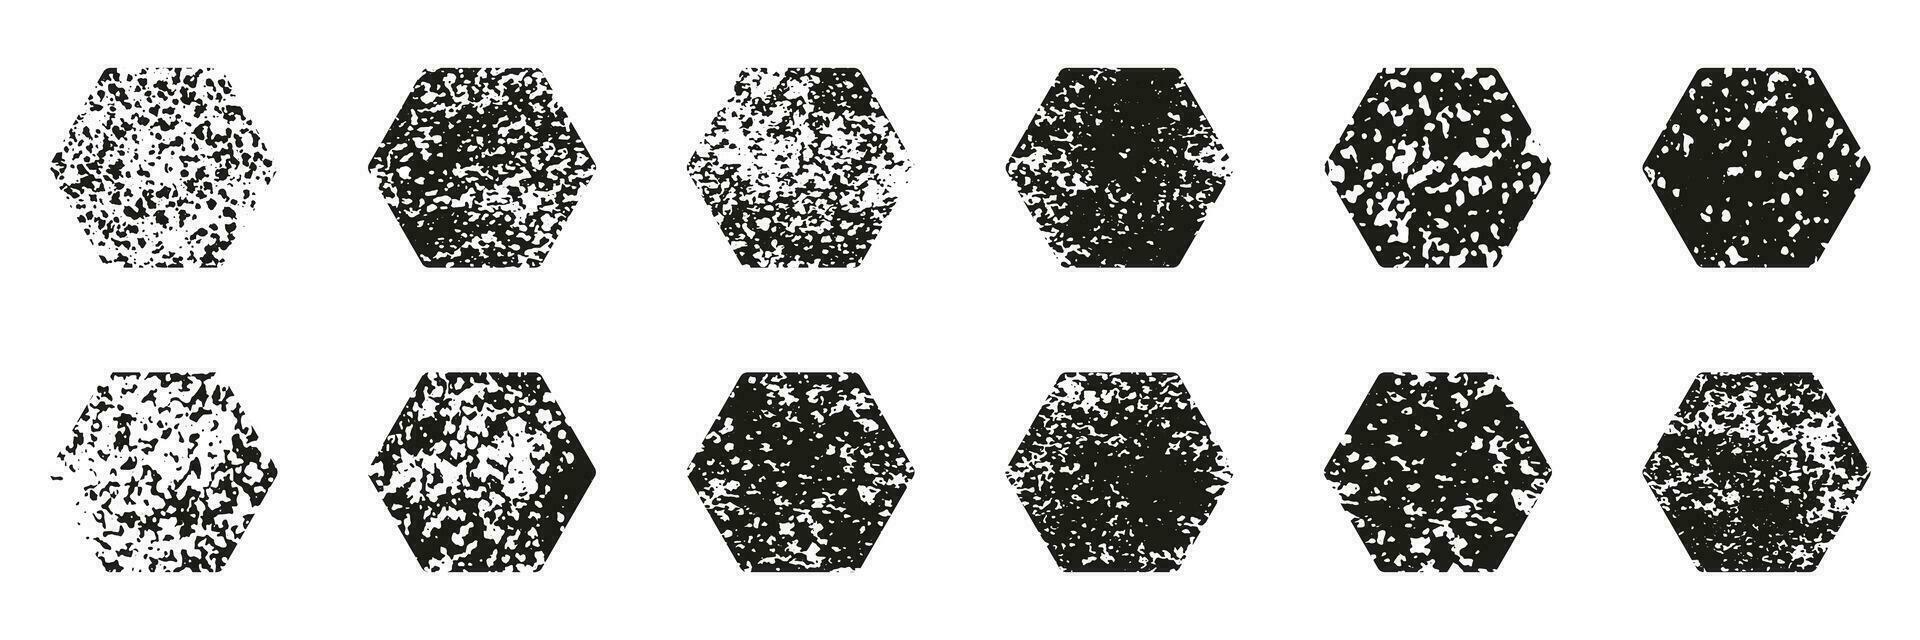 zeshoek vorm grunge set. wijnoogst zwart zeshoekig bekladden verzameling. ruw structuur geometrie stempel. abstract retro korrelig ontwerp element. geïsoleerd vector illustratie.